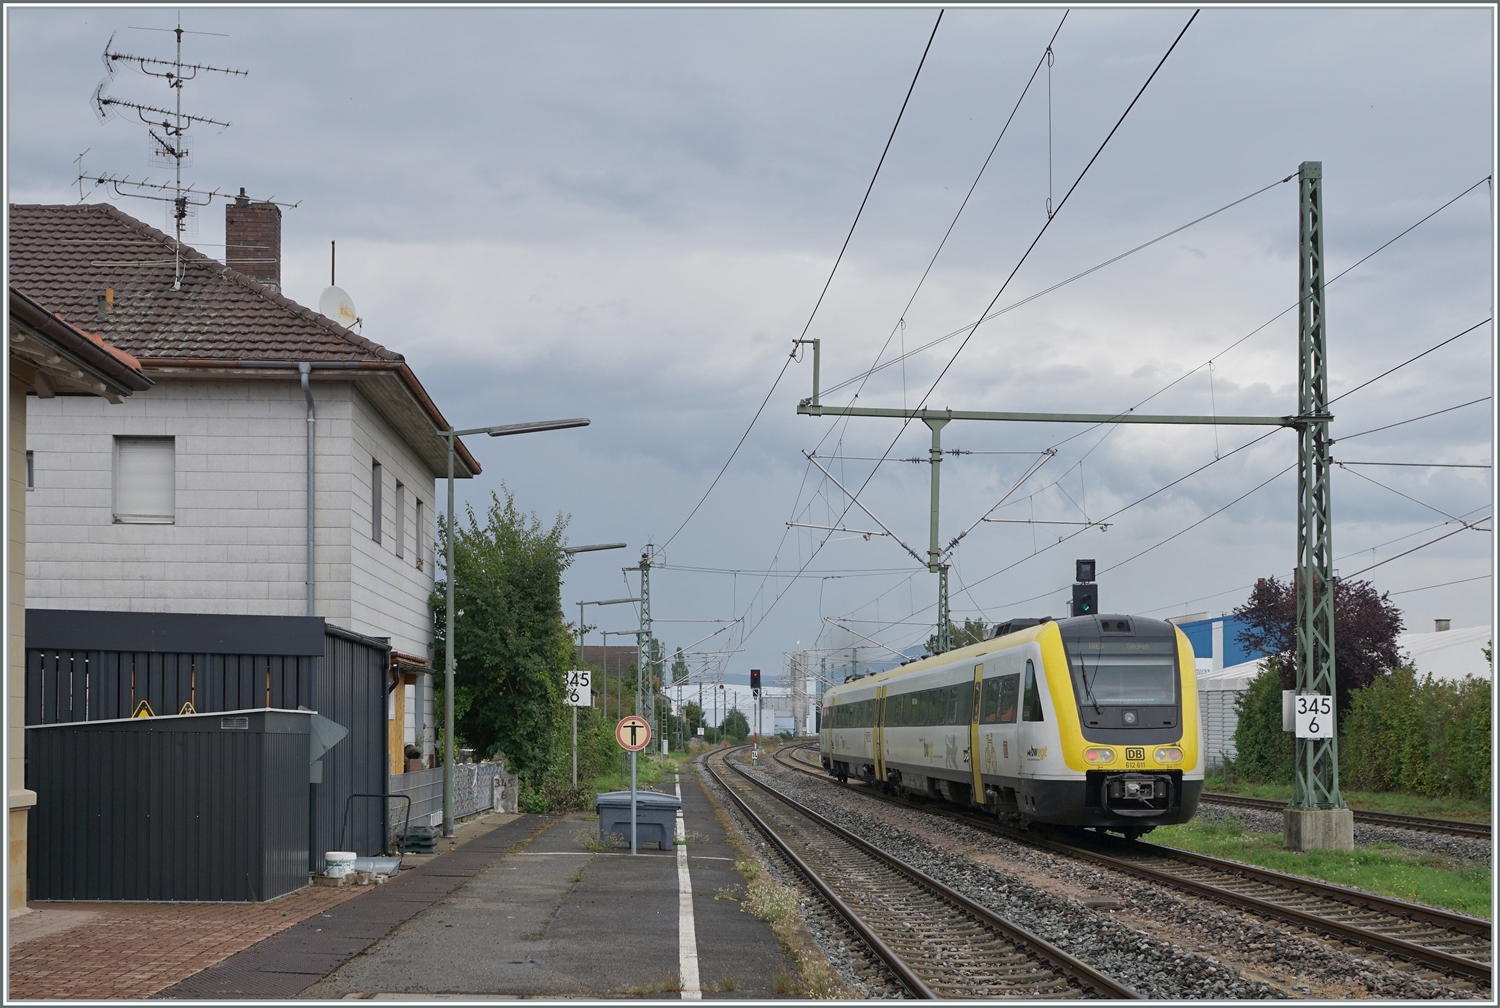 Der DB 612 611 verlässt nach kurzen Halt Erzingen (Baden). Der Zug ist auf der Fahrt von Basel Bad Bf nach Singen.

6. Sept. 2022